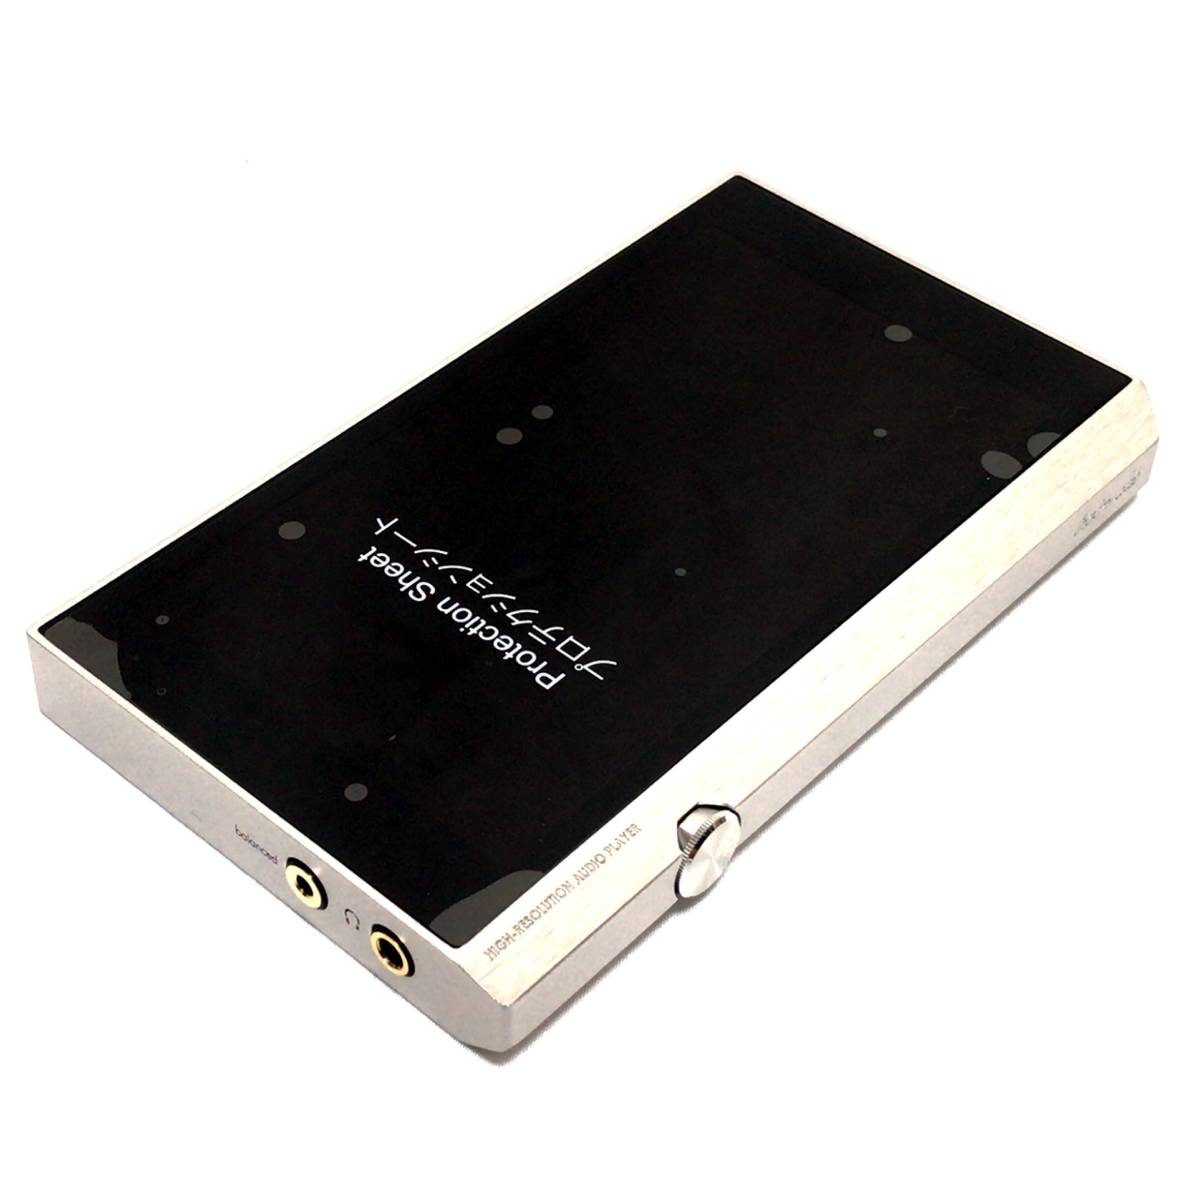 パイオニア XDP-300R デジタルオーディオプレーヤー ハイレゾ対応